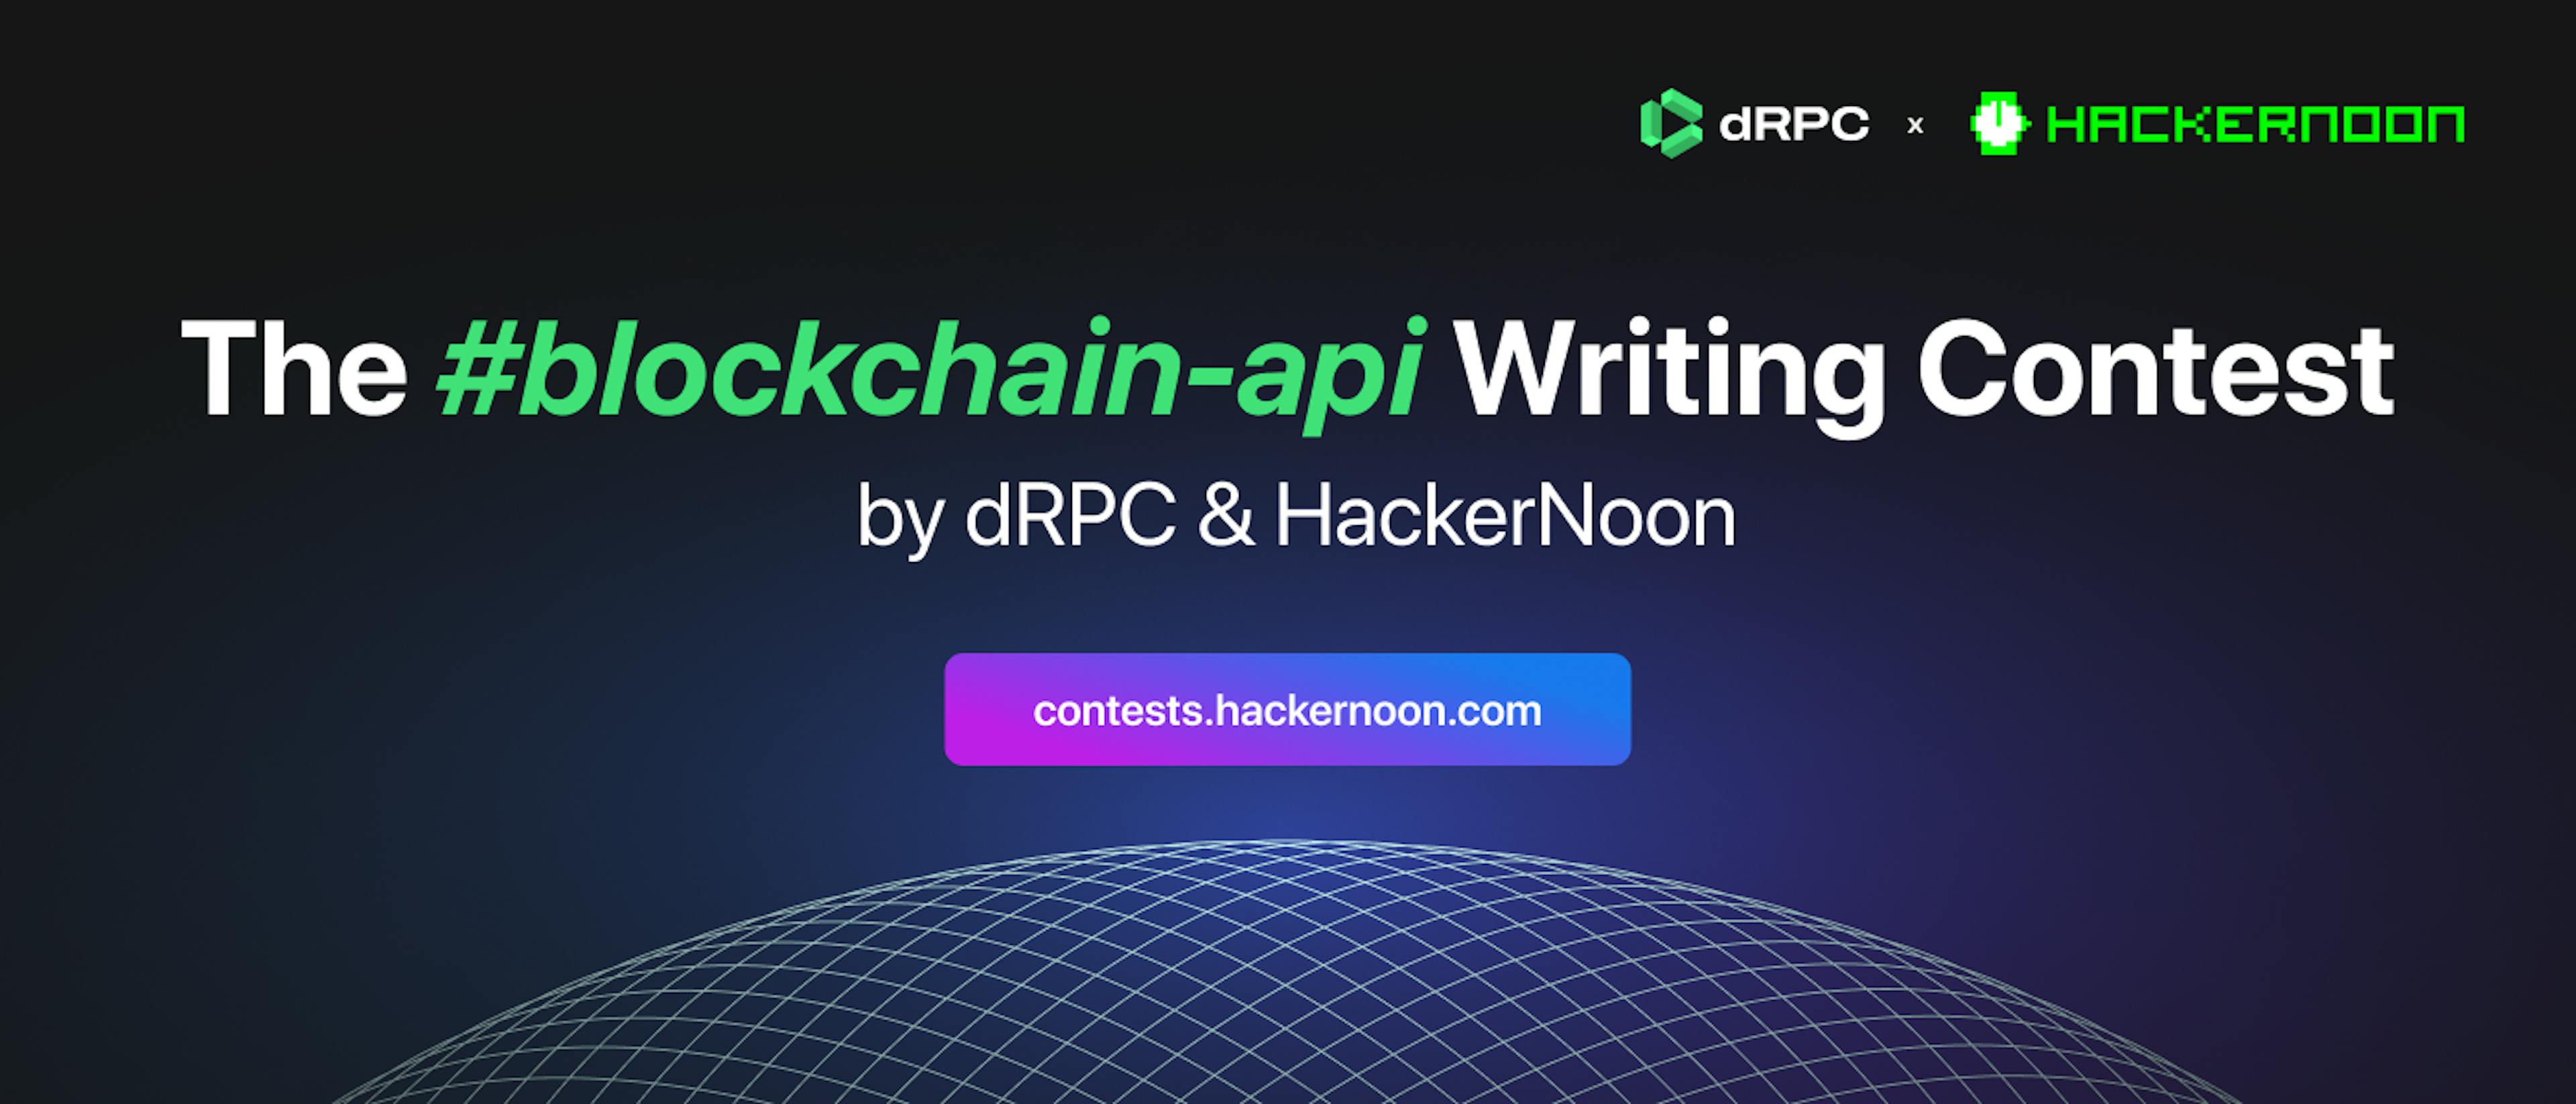 featured image - dRPC ve HackerNoon'un düzenlediği #blockchain-api Yazma Yarışması ile tanışın